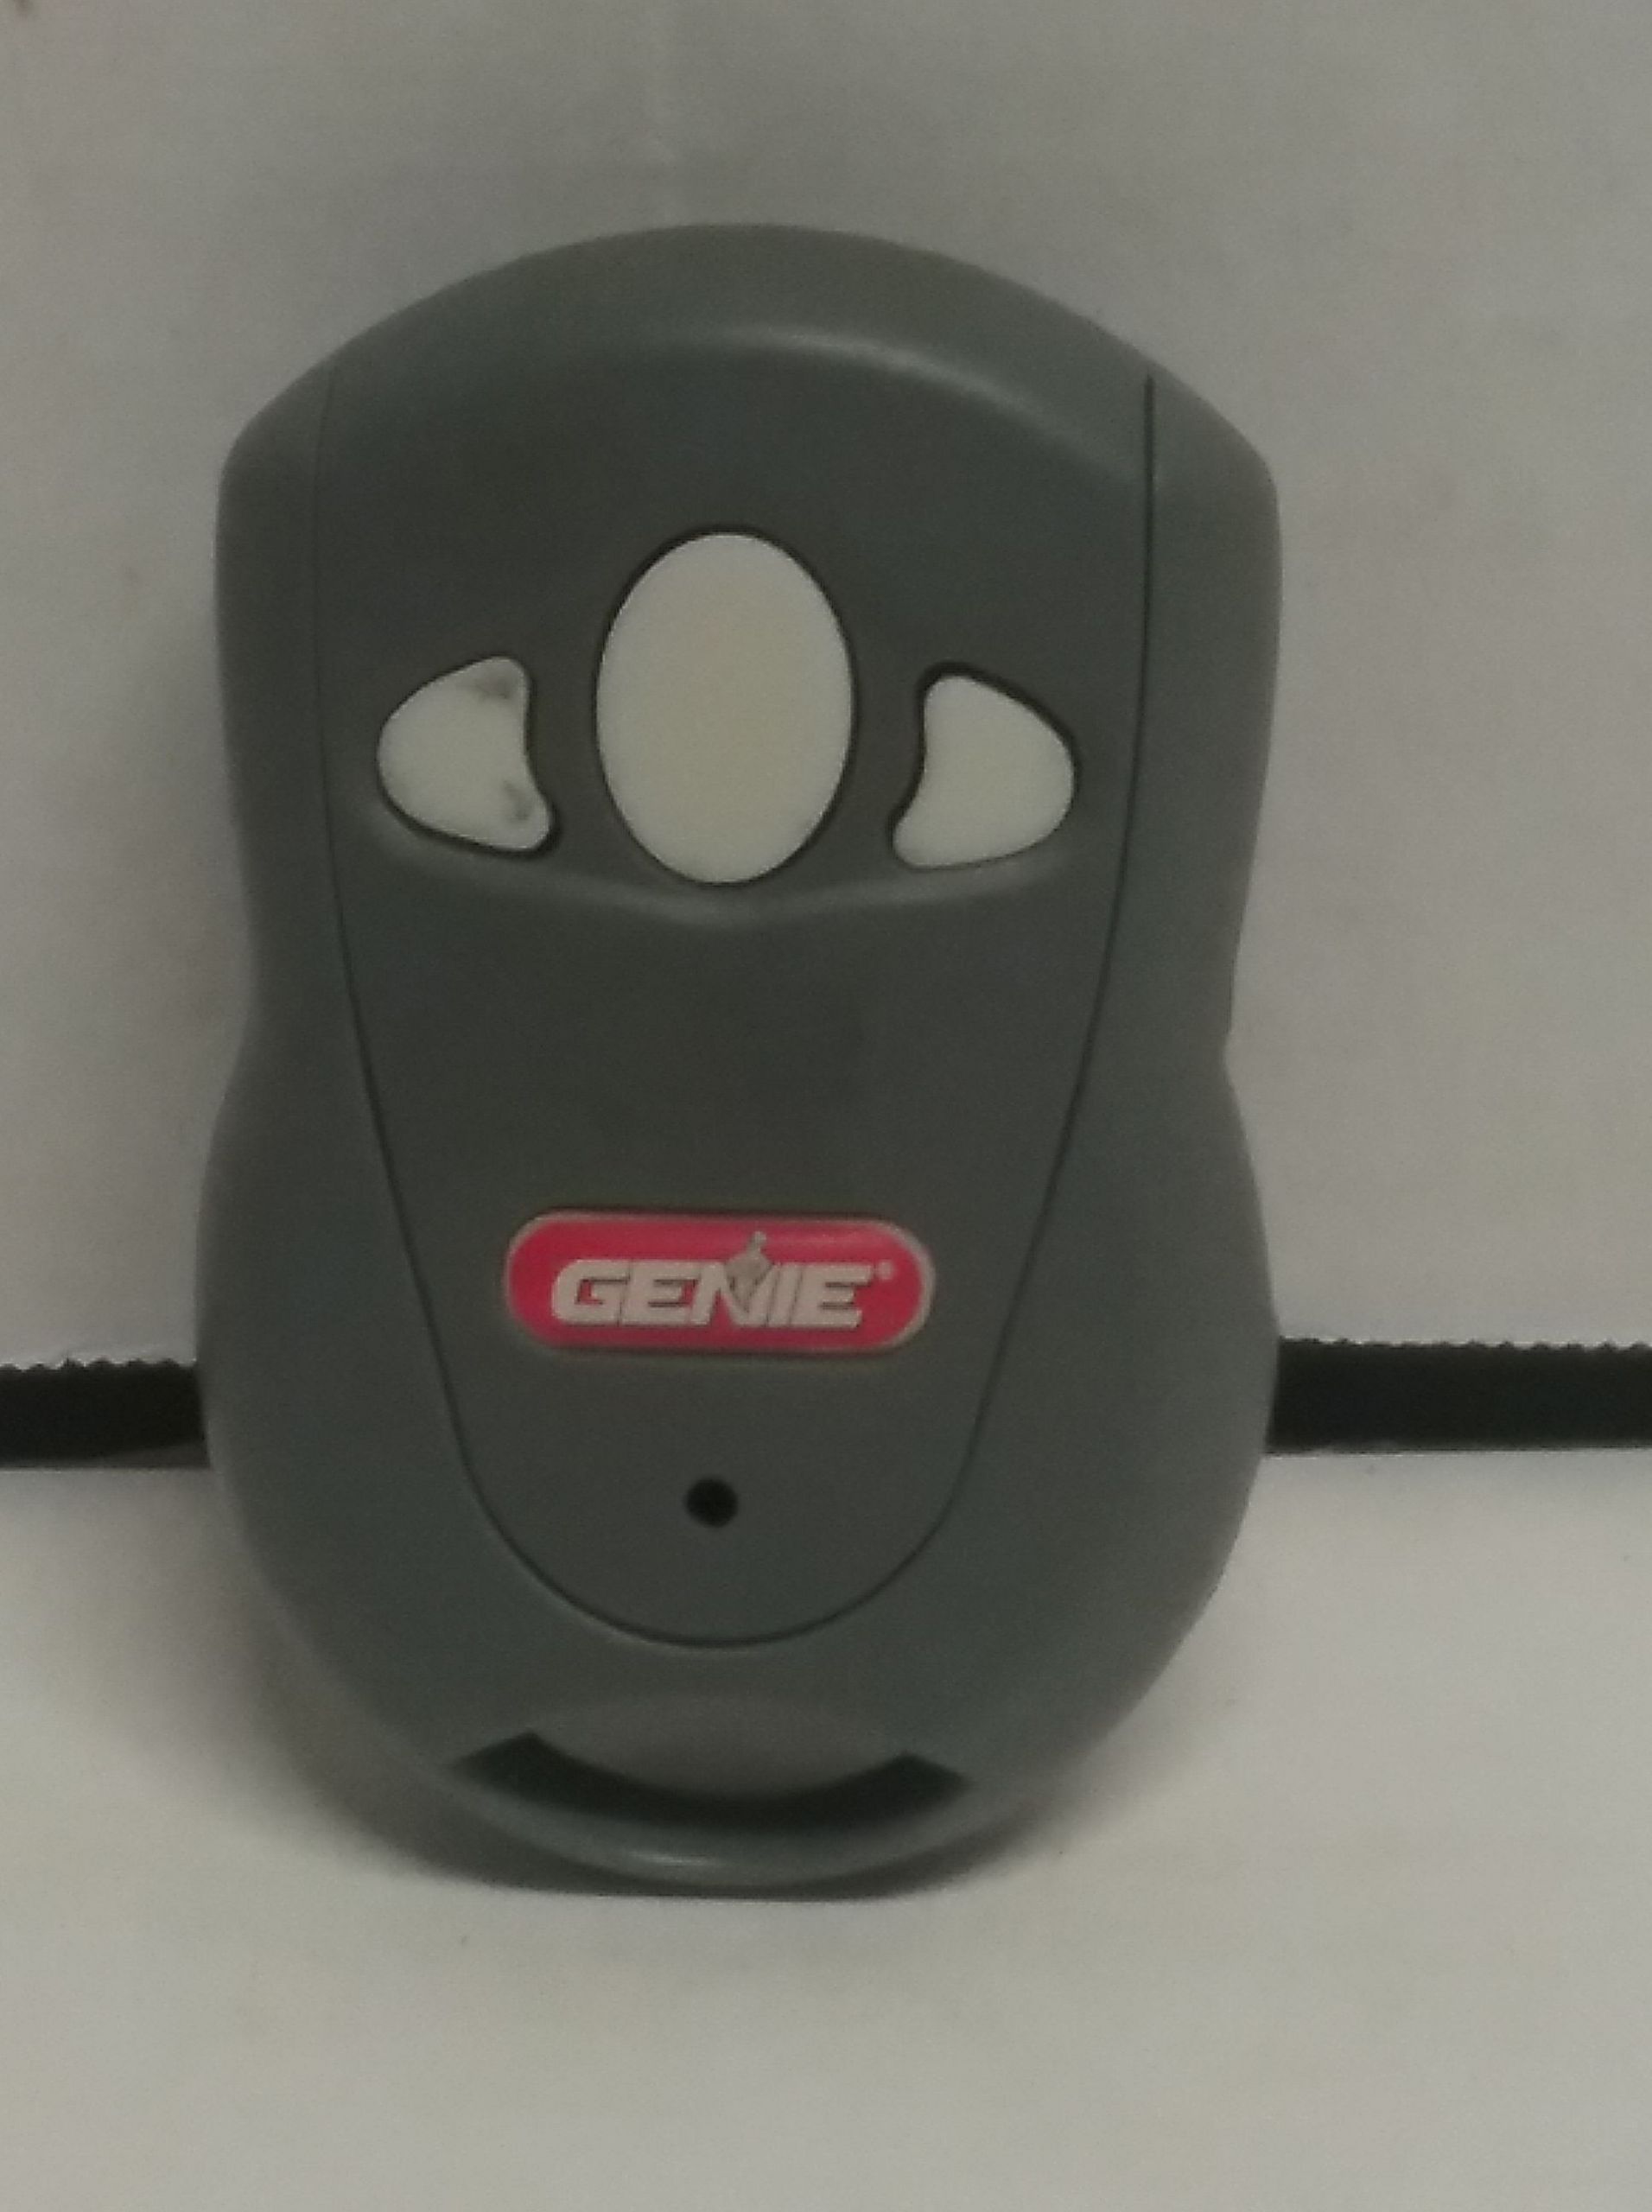 Genie Garage Door Openers Programing
 Genie overhead door 3 button Garage Door & gate remote